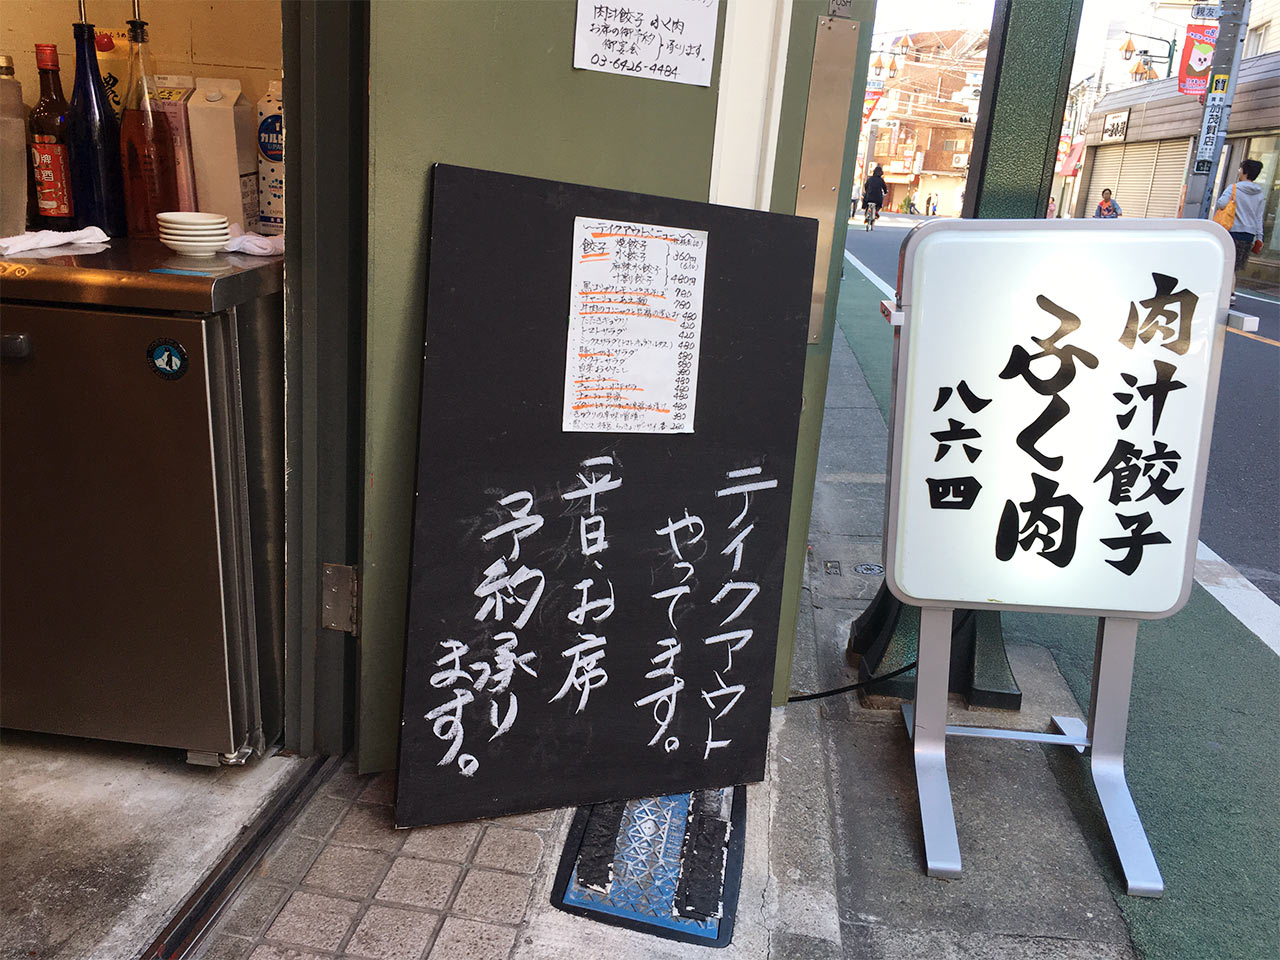 武蔵小山の餃子屋ふく肉のテイクアウトメニュー